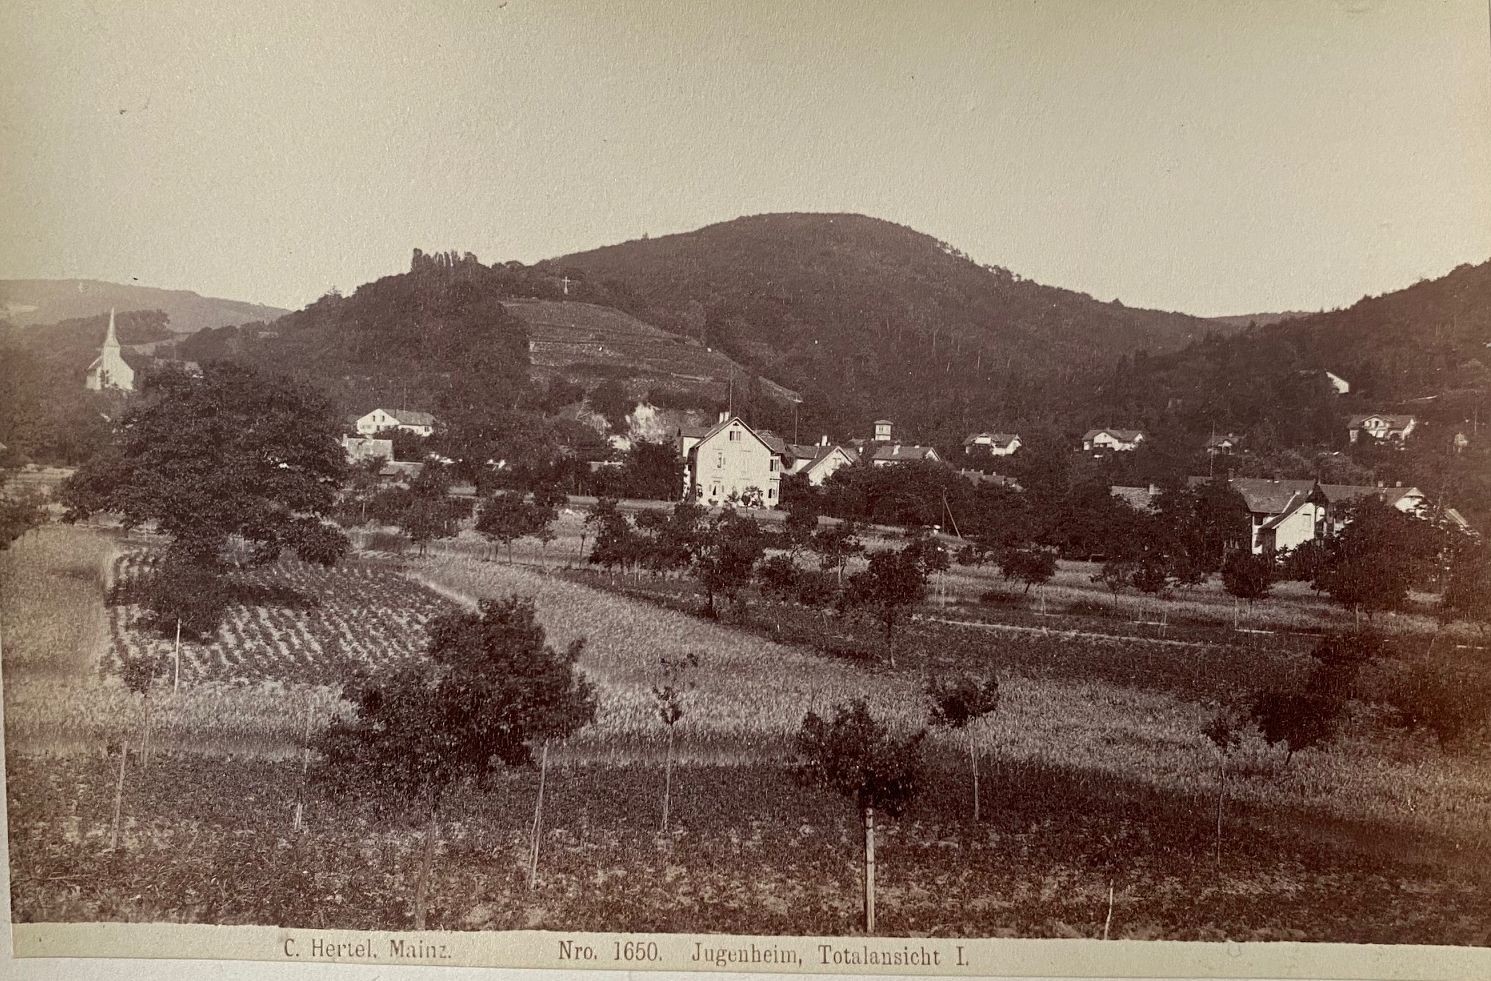 Fotografie, Carl Hertel No. 1650, Jugenheim, Totalansicht I, ca. 1885 (Taunus-Rhein-Main - Regionalgeschichtliche Sammlung Dr. Stefan Naas CC BY-NC-SA)